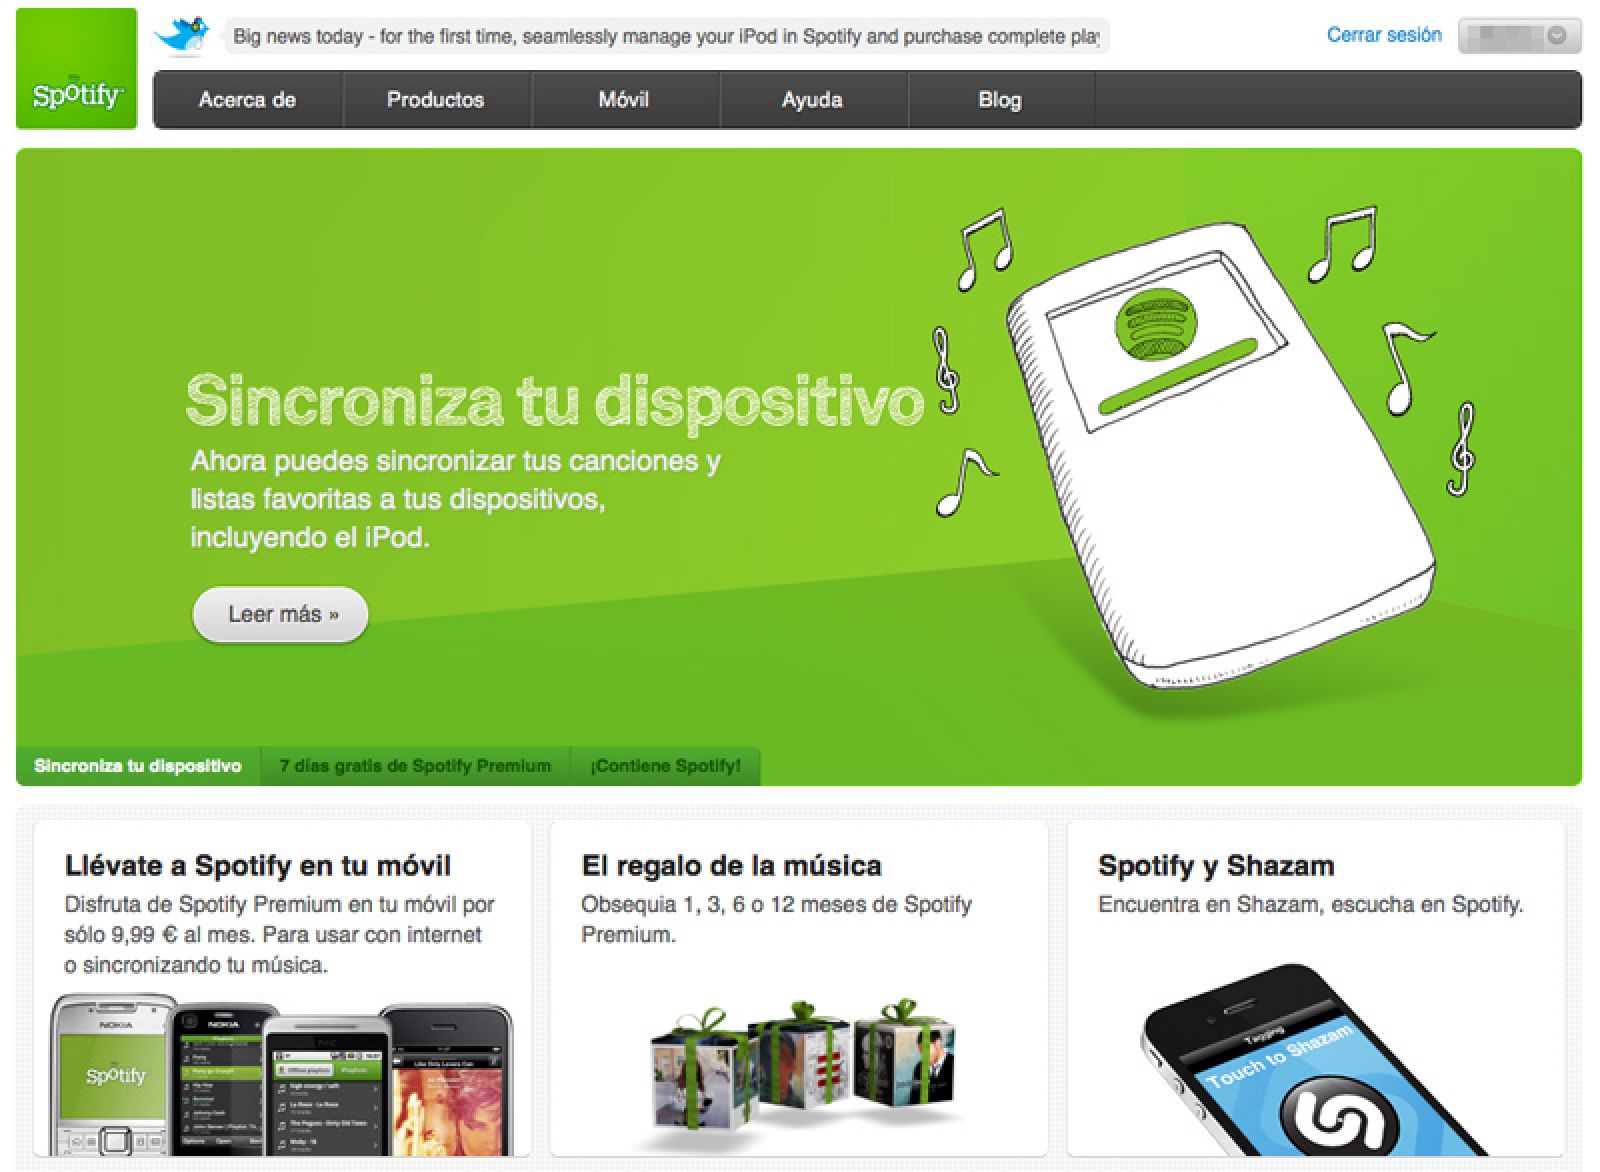 Spotify introduce un servicio de descarga para poder llevar las canciones al iPod